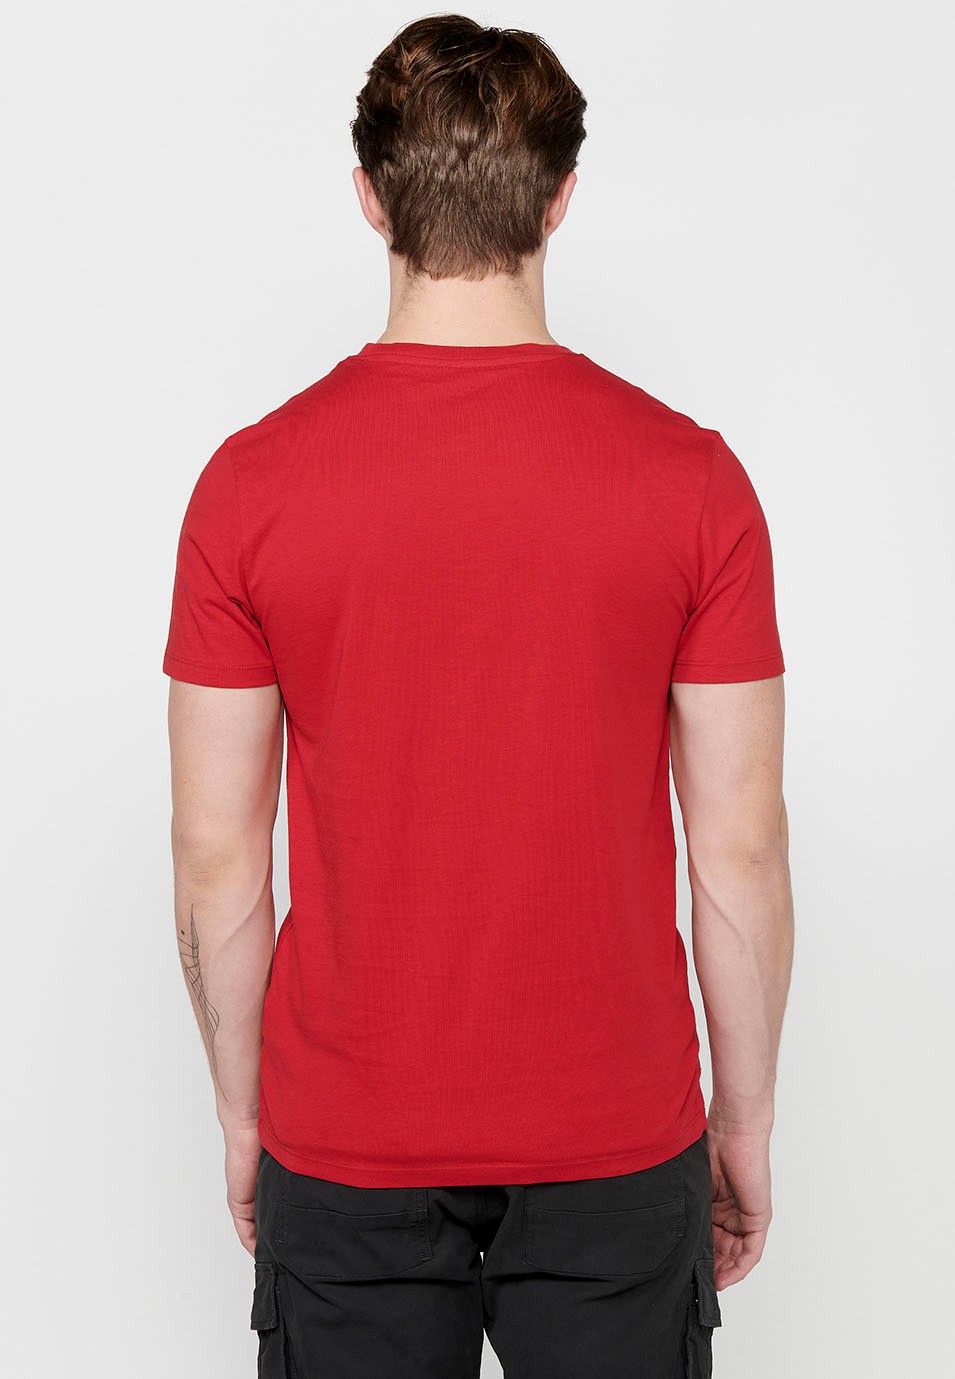 Herren-T-Shirt aus Baumwolle mit Rundhalsausschnitt und kurzen Ärmeln in Rot 1